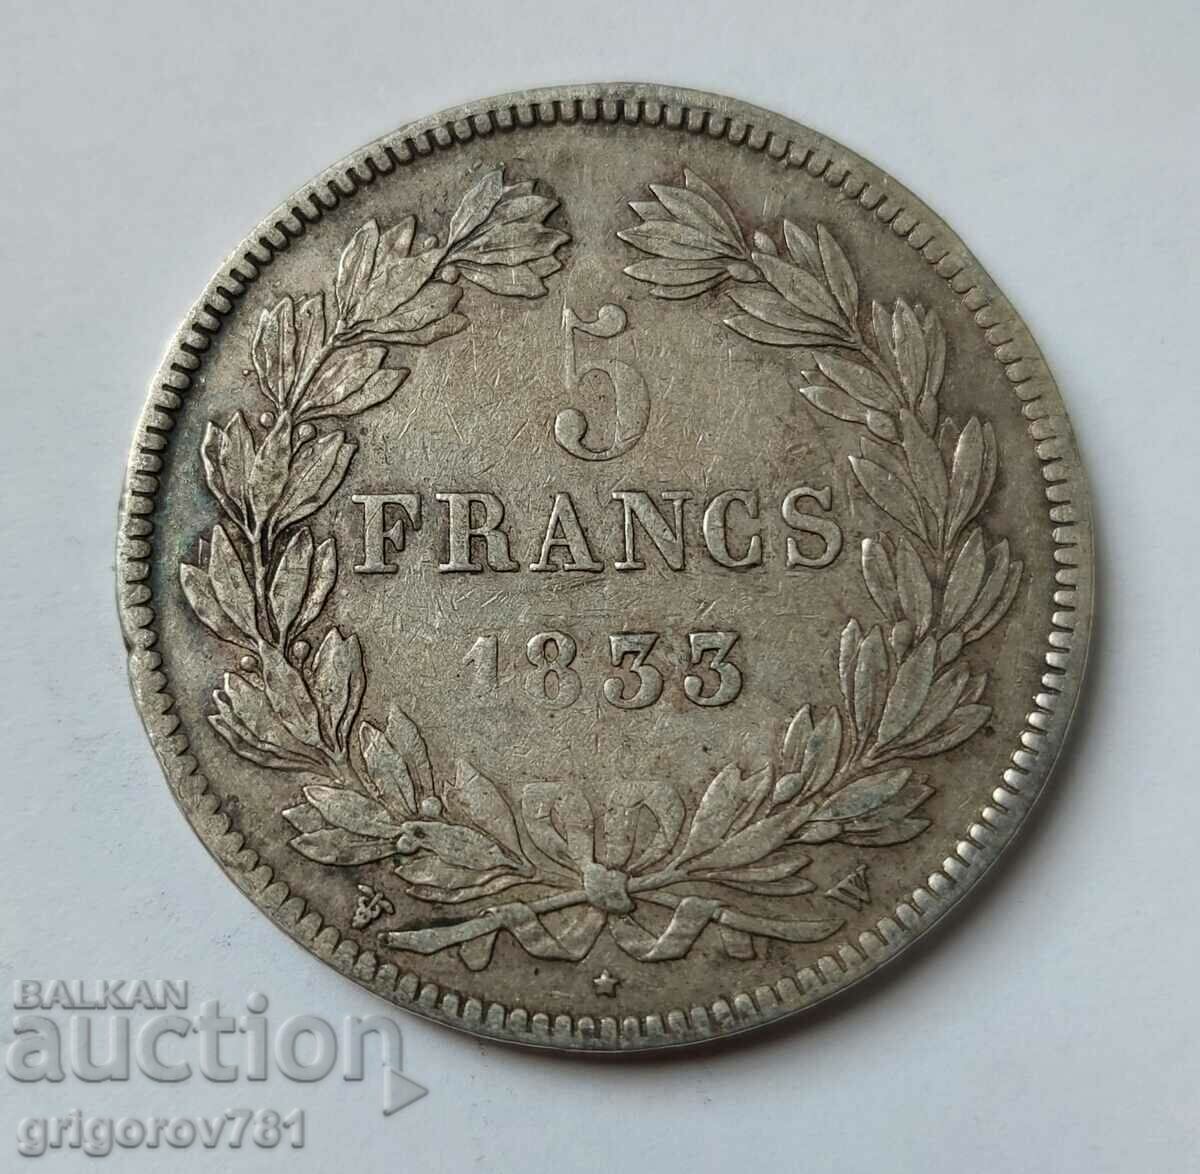 5 Franci Argint Franta 1833 W - Moneda de argint #118